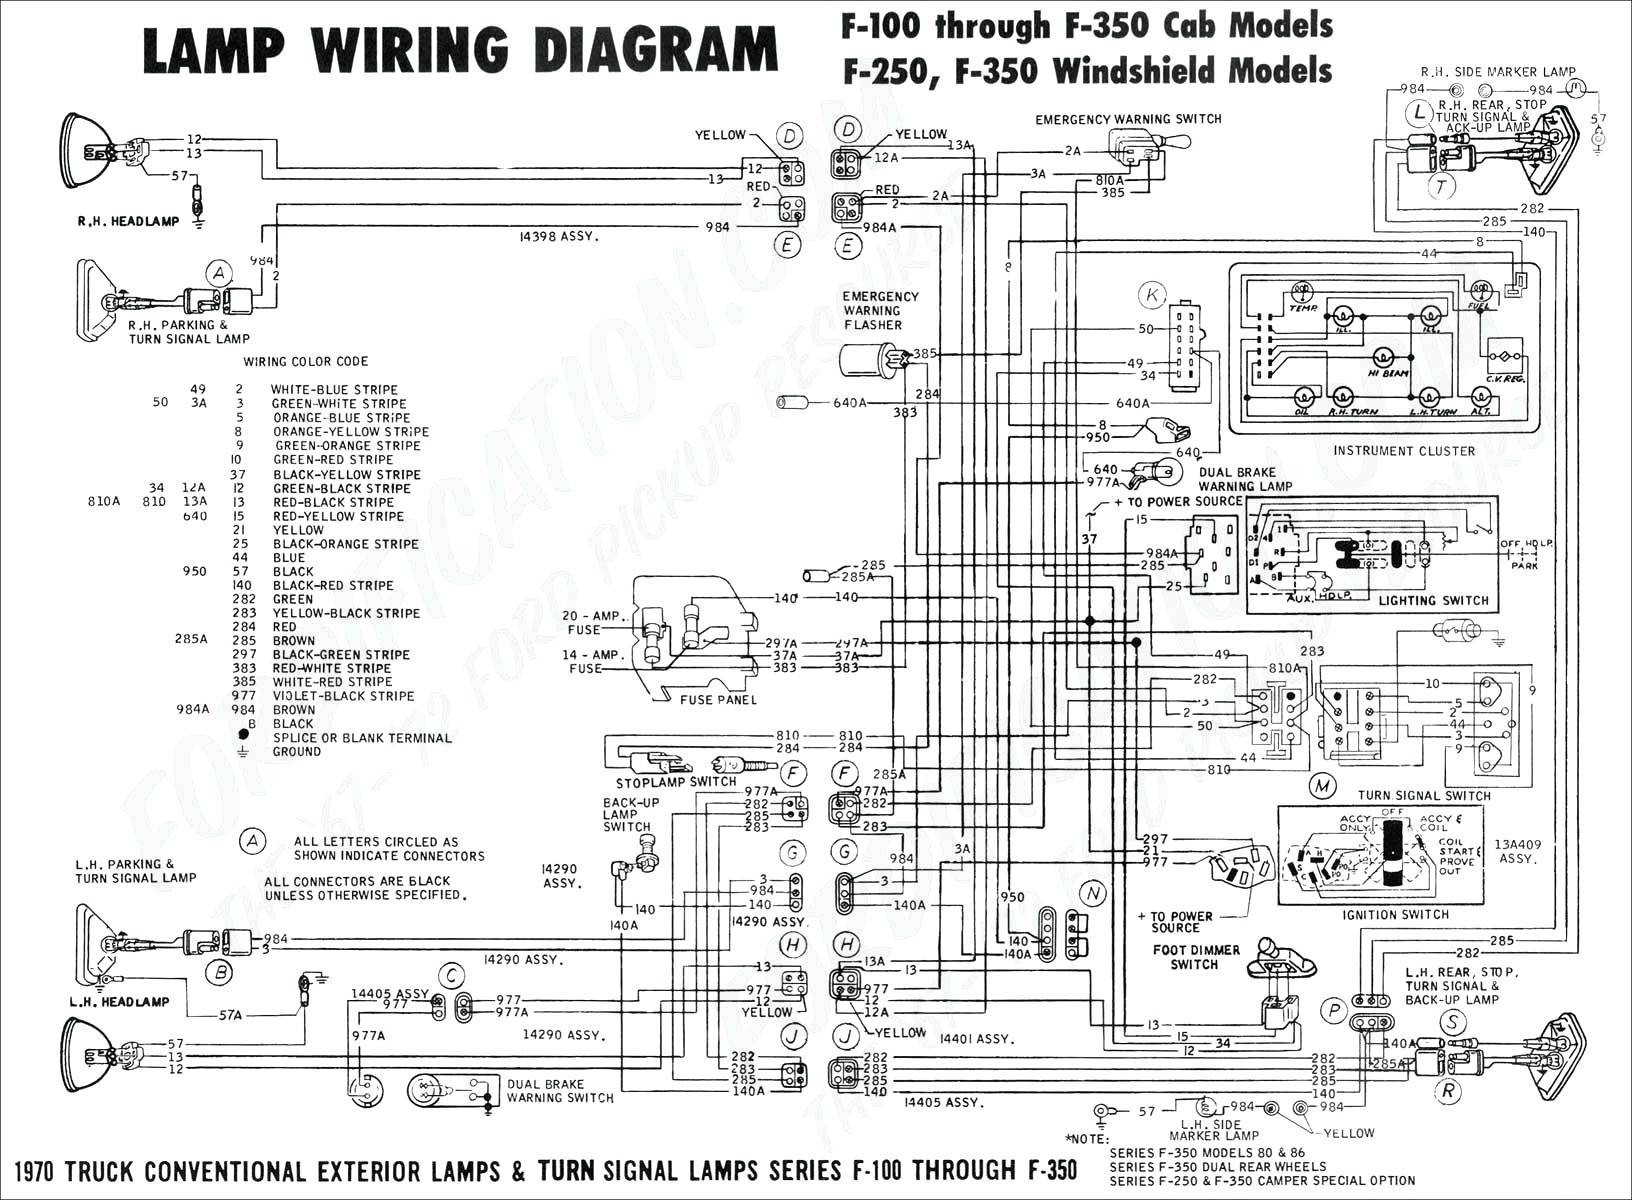 2005 toyota Sienna Engine Diagram toyota Sienna Seat Wiring Diagram Free Download Wiring Diagram toolbox Of 2005 toyota Sienna Engine Diagram